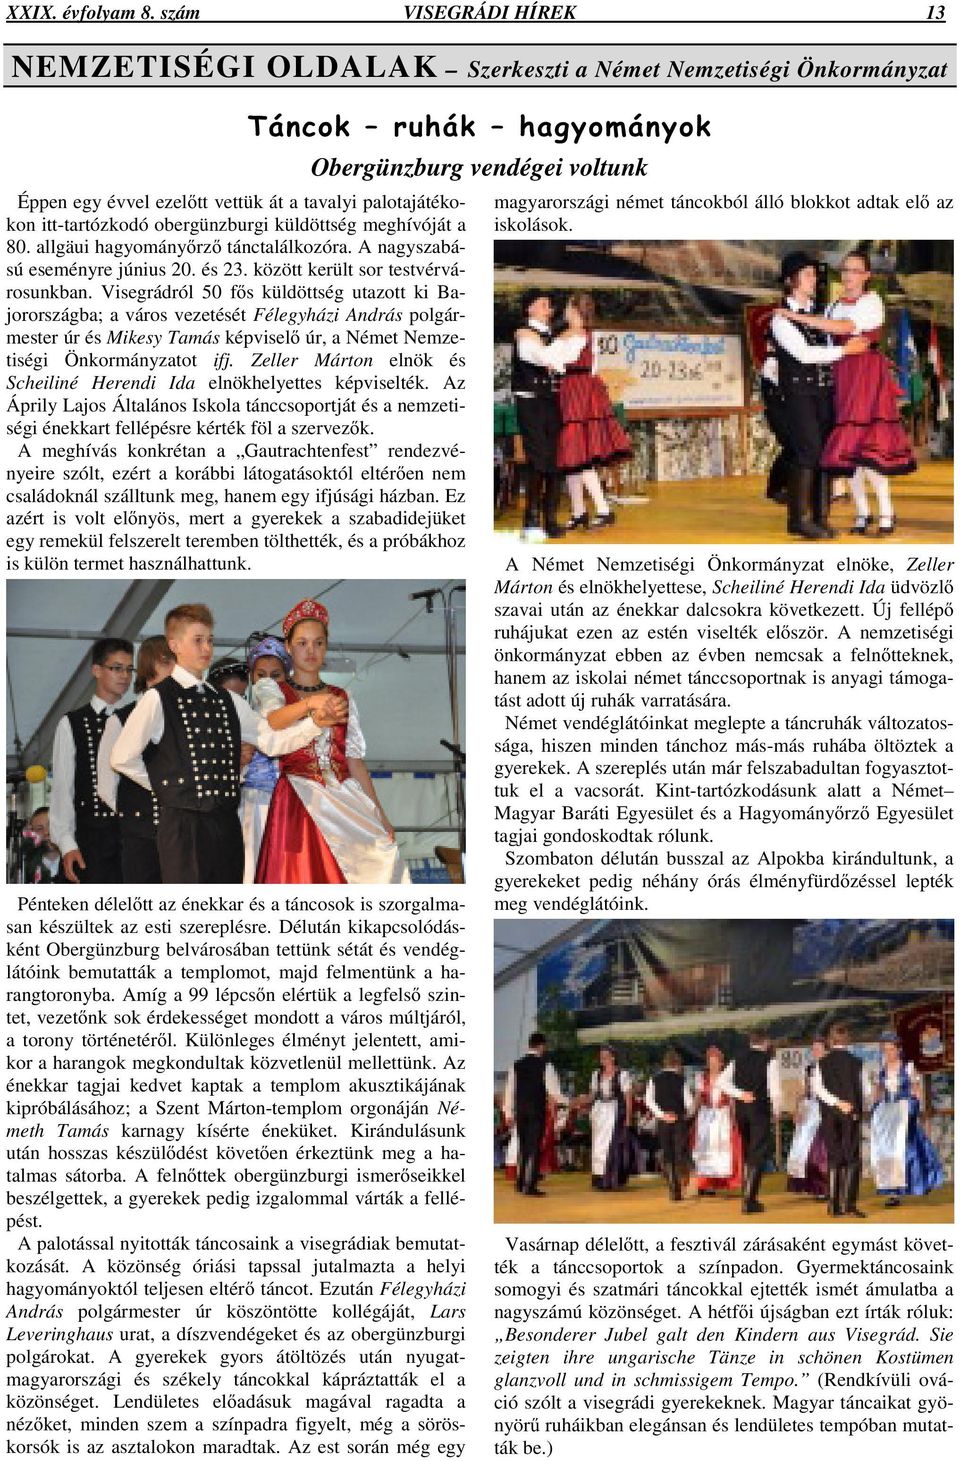 a 80. allgäui hagyomány rz tánctalálkozóra. A nagyszabású eseményre június 20. és 23. között került sor testvérvárosunkban.